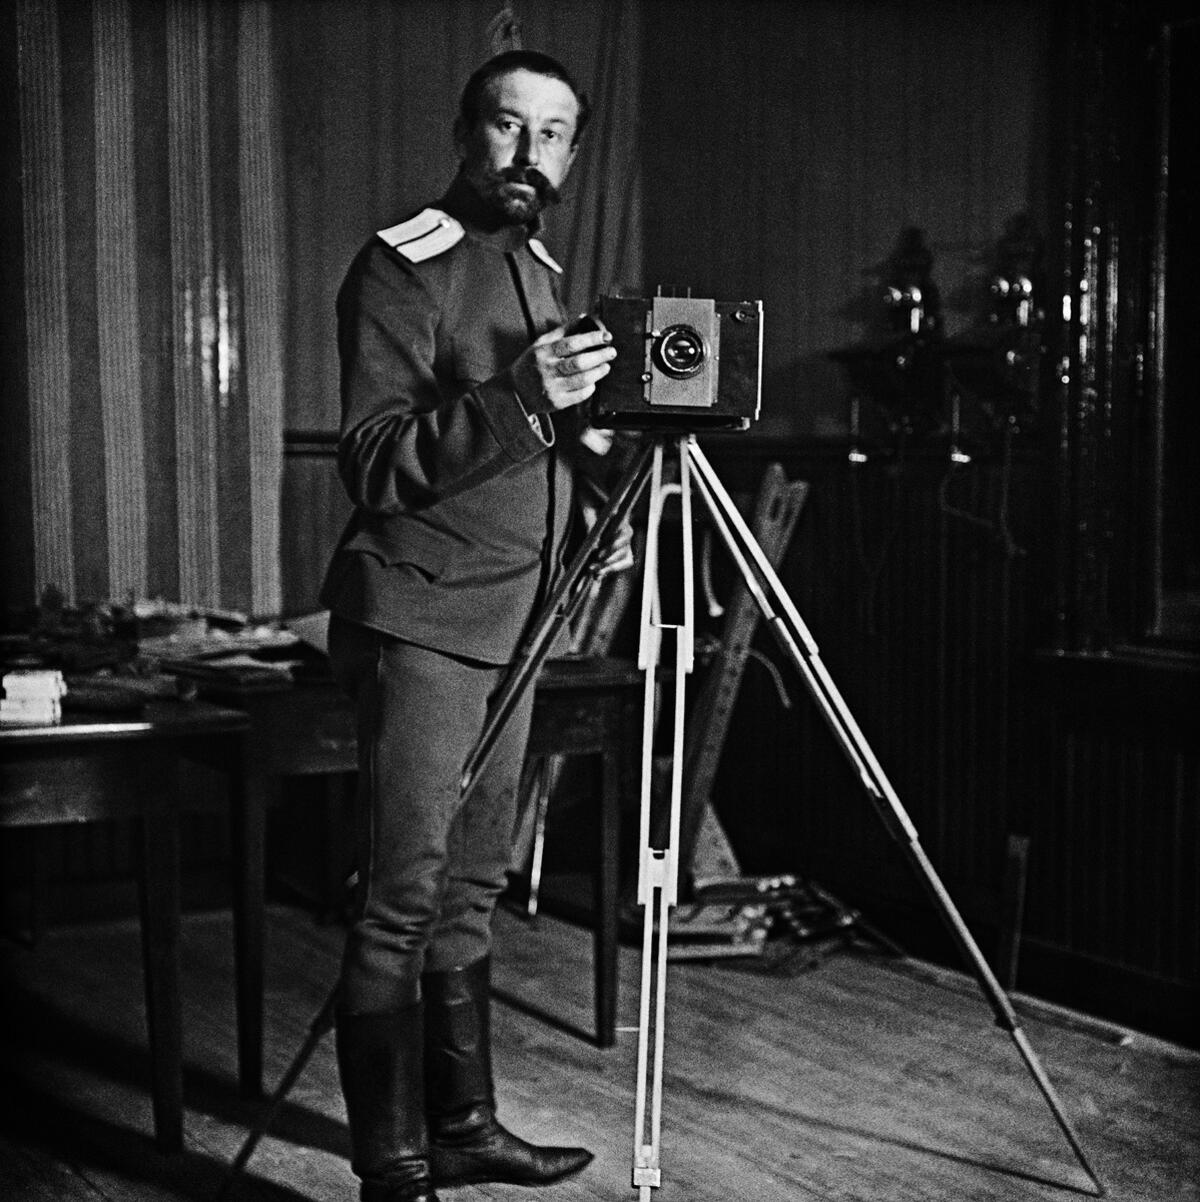 Univormupukuinen, parrakas ja viiksekäs mies seisoo jalustalla seisovan kameran takana. Taustalla näkyy seinä, johon on kiinnitetty kaksi puhelinta, sekä kaksi pientä pöytää, joilla on paperipinoja.